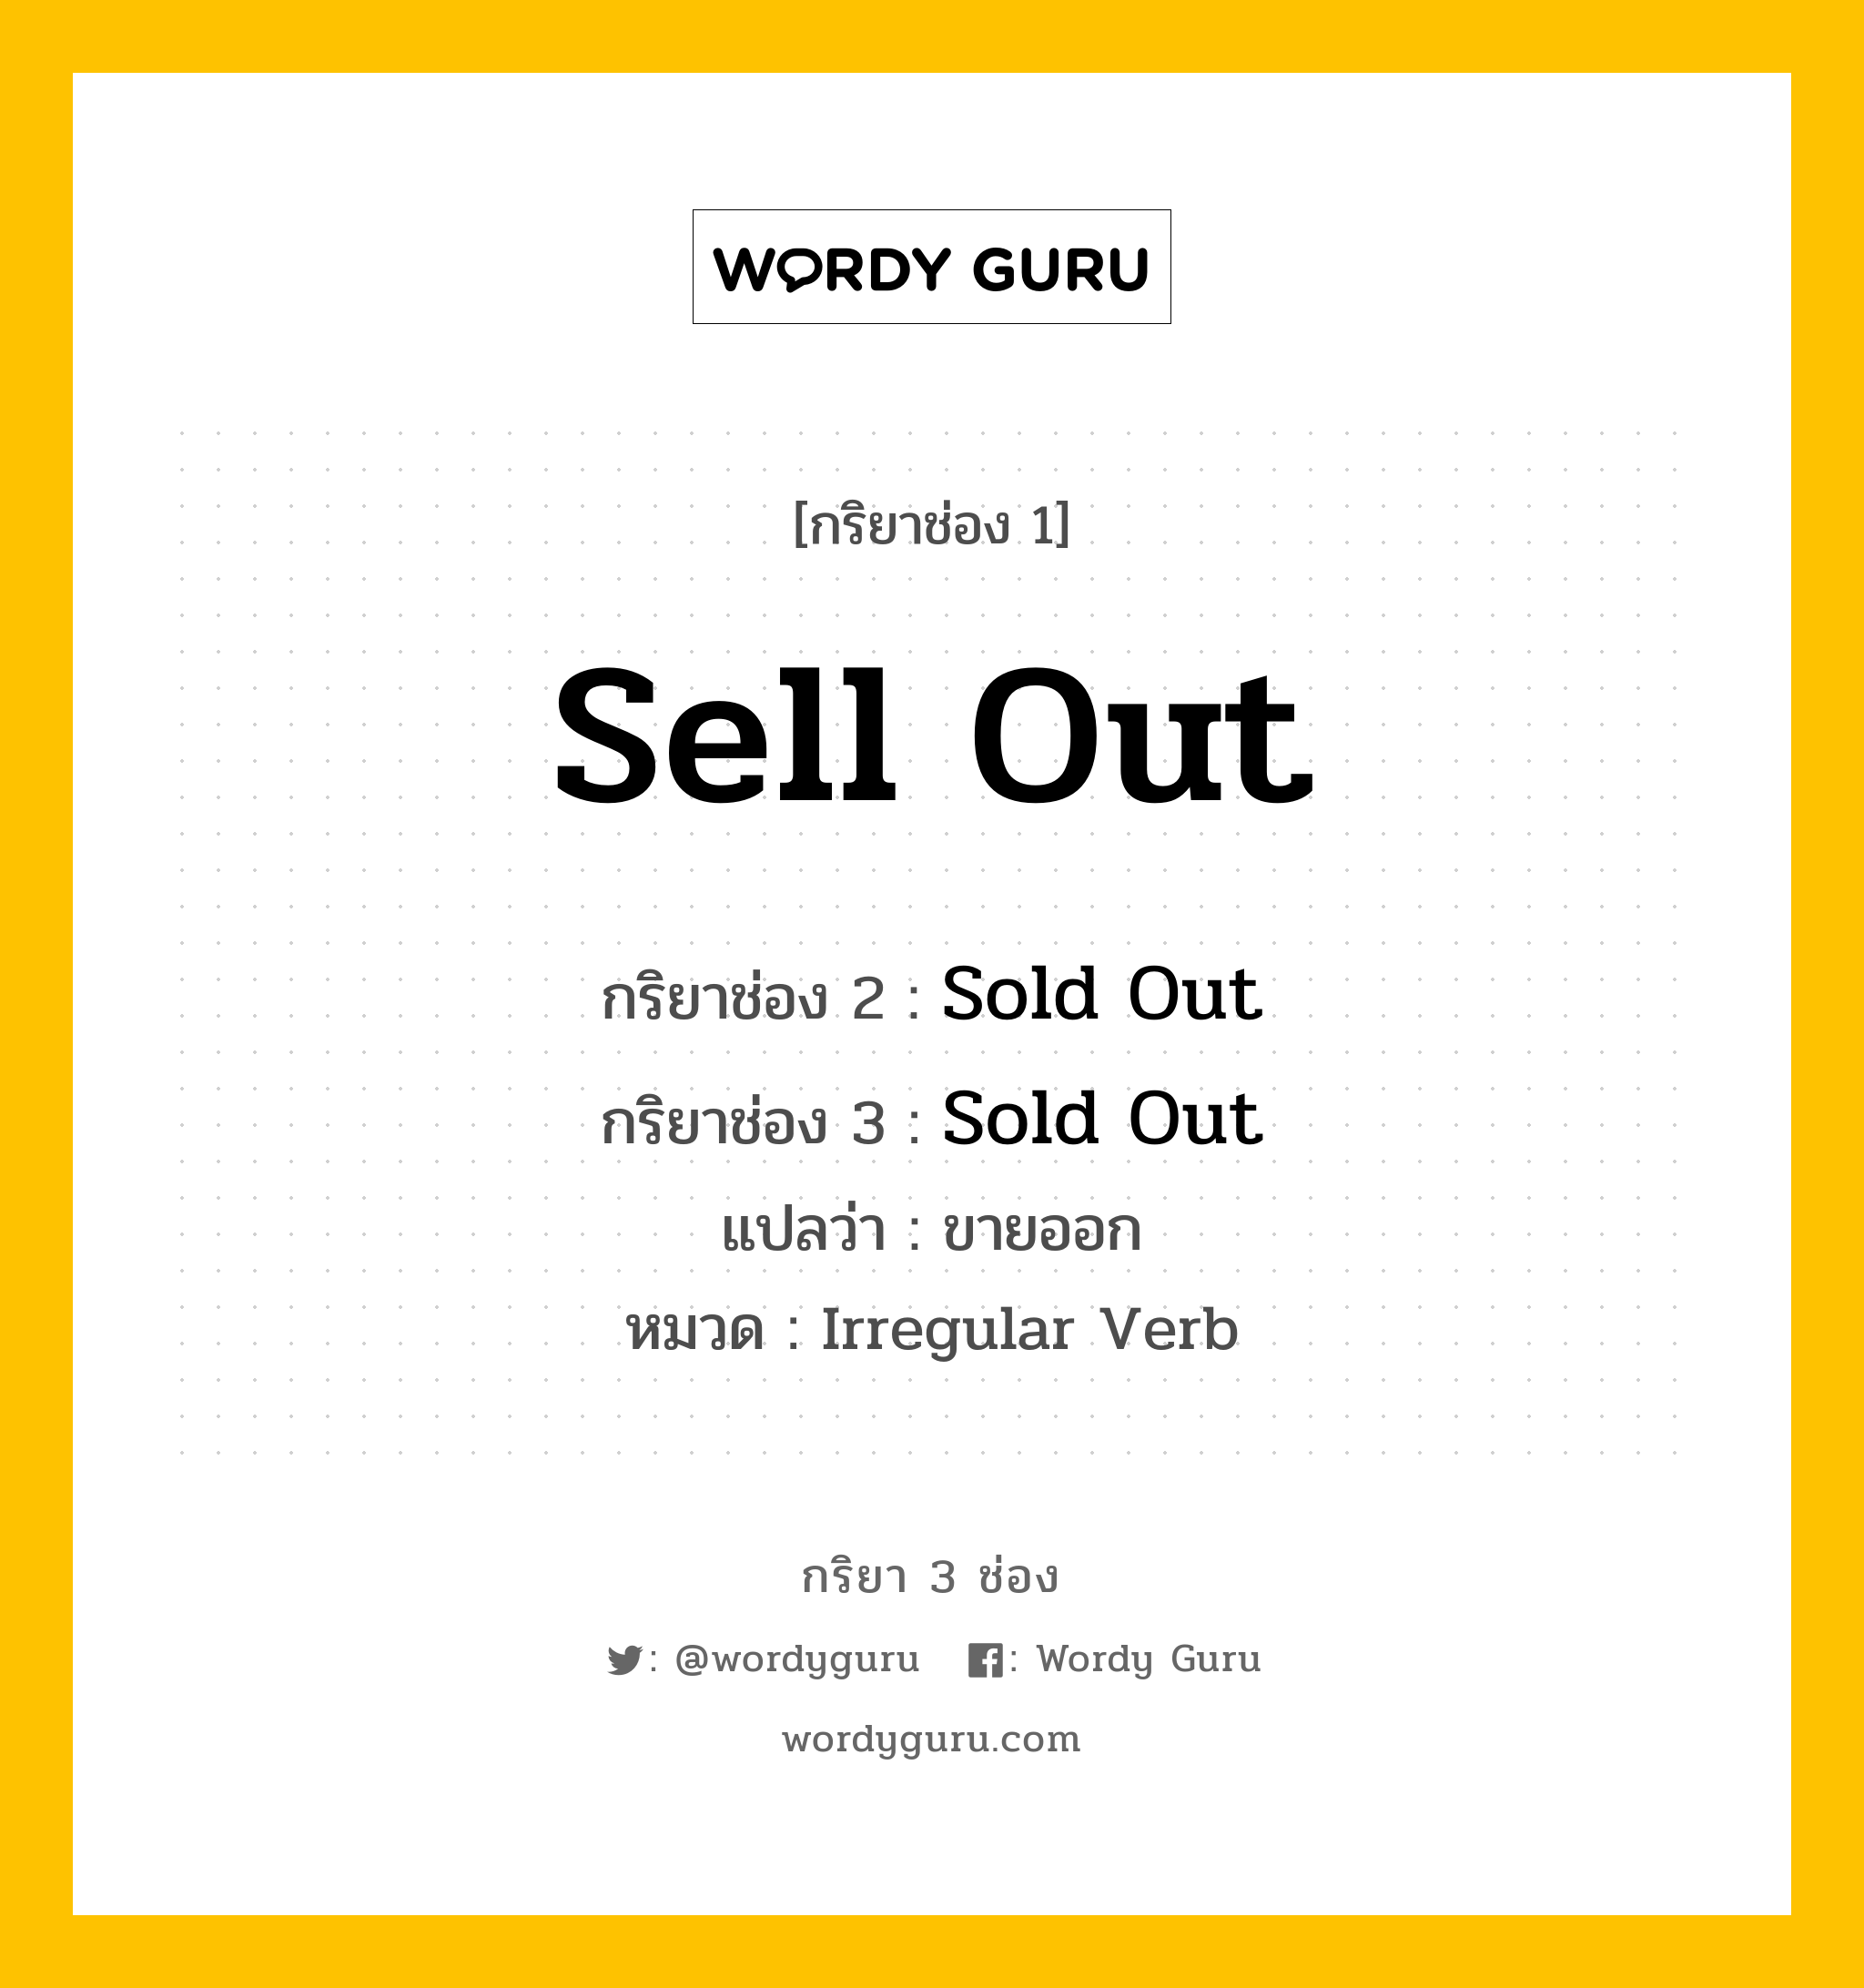 กริยา 3 ช่อง: Sell Out ช่อง 2 Sell Out ช่อง 3 คืออะไร, กริยาช่อง 1 Sell Out กริยาช่อง 2 Sold Out กริยาช่อง 3 Sold Out แปลว่า ขายออก หมวด Irregular Verb หมวด Irregular Verb